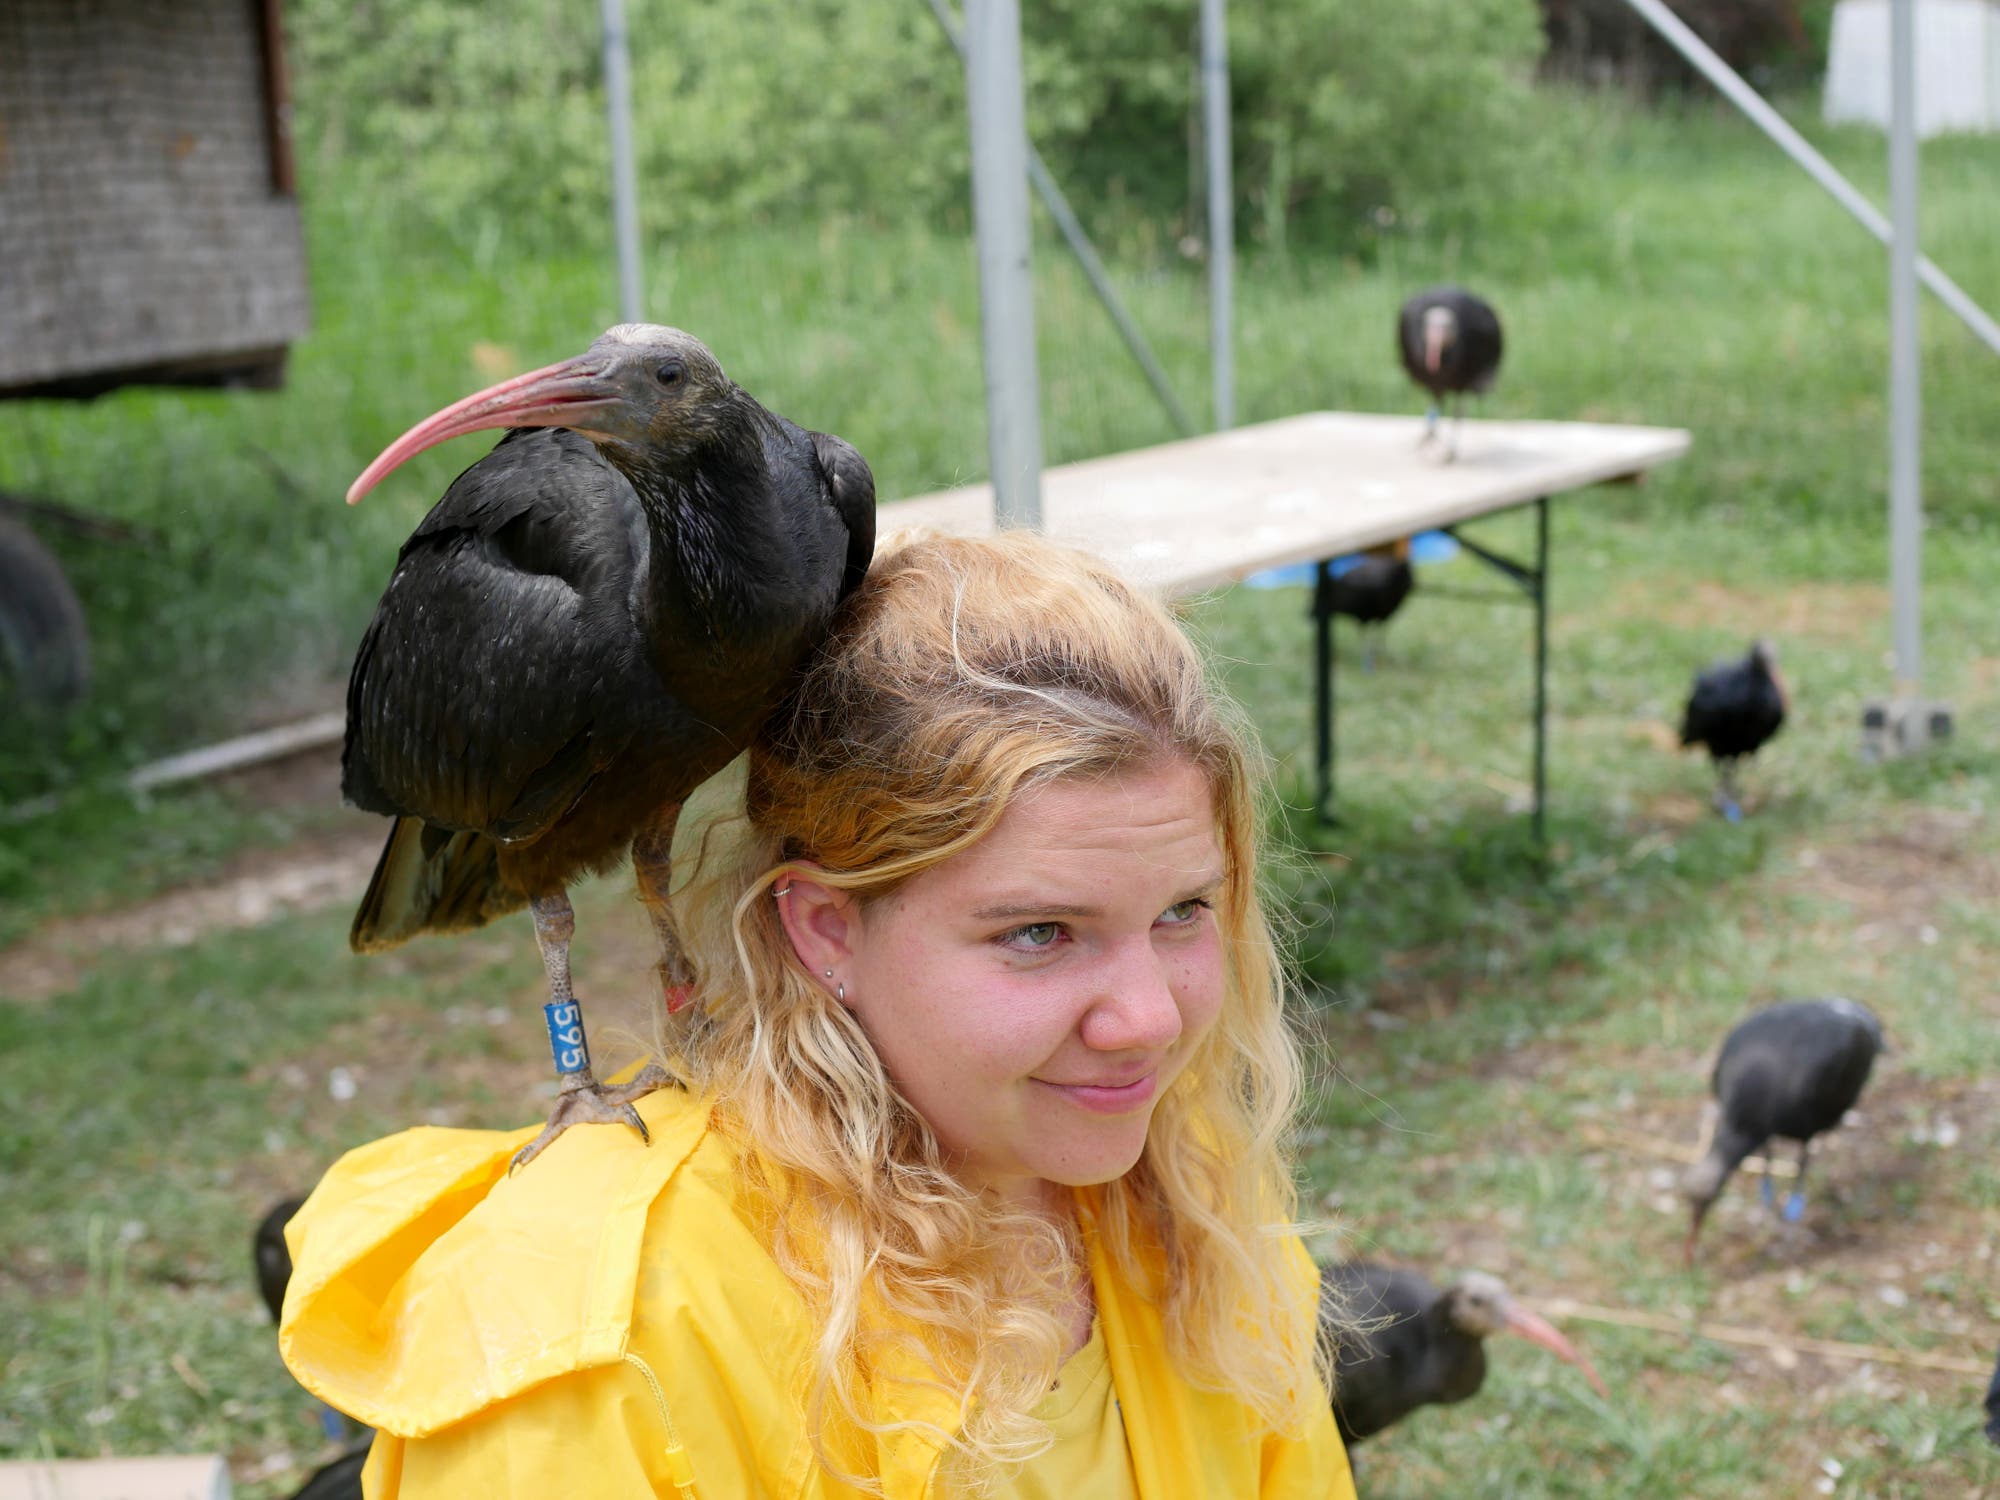 Eine junge Frau im Friesennerz mit einem großen schwarzen Vogel auf der Schulter.